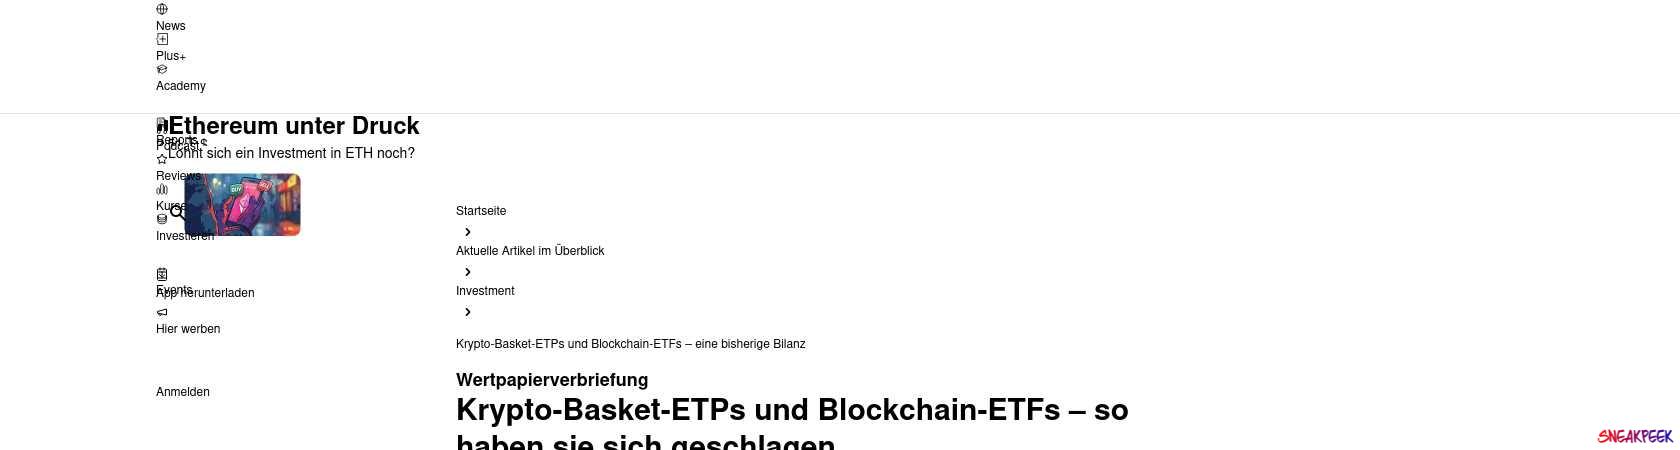 Read the full Article:  ⭲ Krypto-Basket-ETPs und Blockchain-ETFs – eine bisherige Bilanz